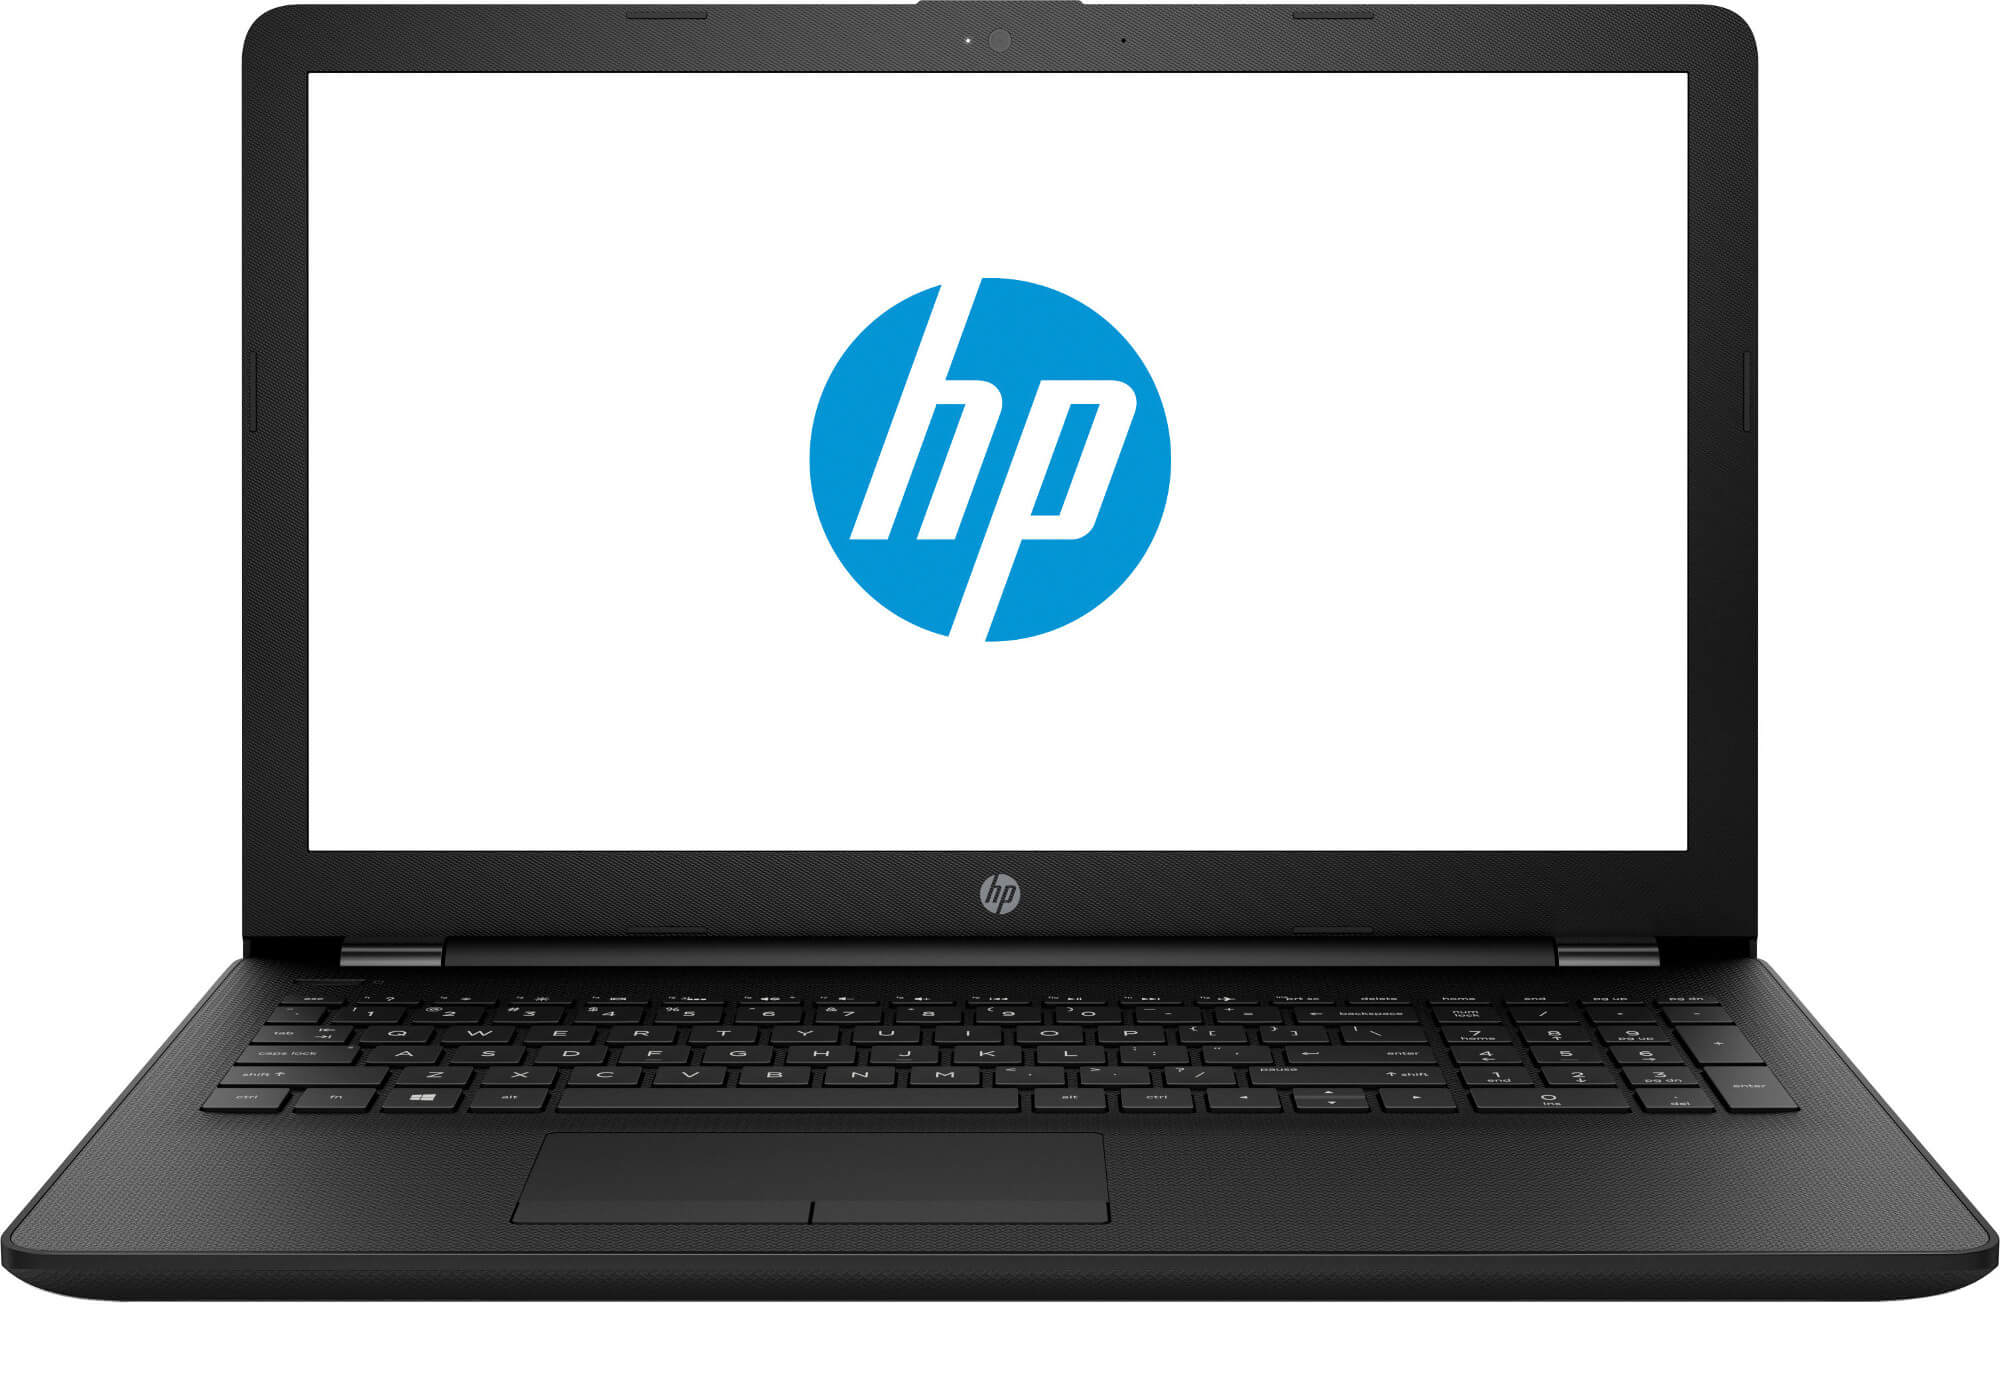 Laptop HP 15-bw010nq, AMD A9-9420, 4GB DDR4, HDD 500GB, AMD Radeon R5, Free DOS